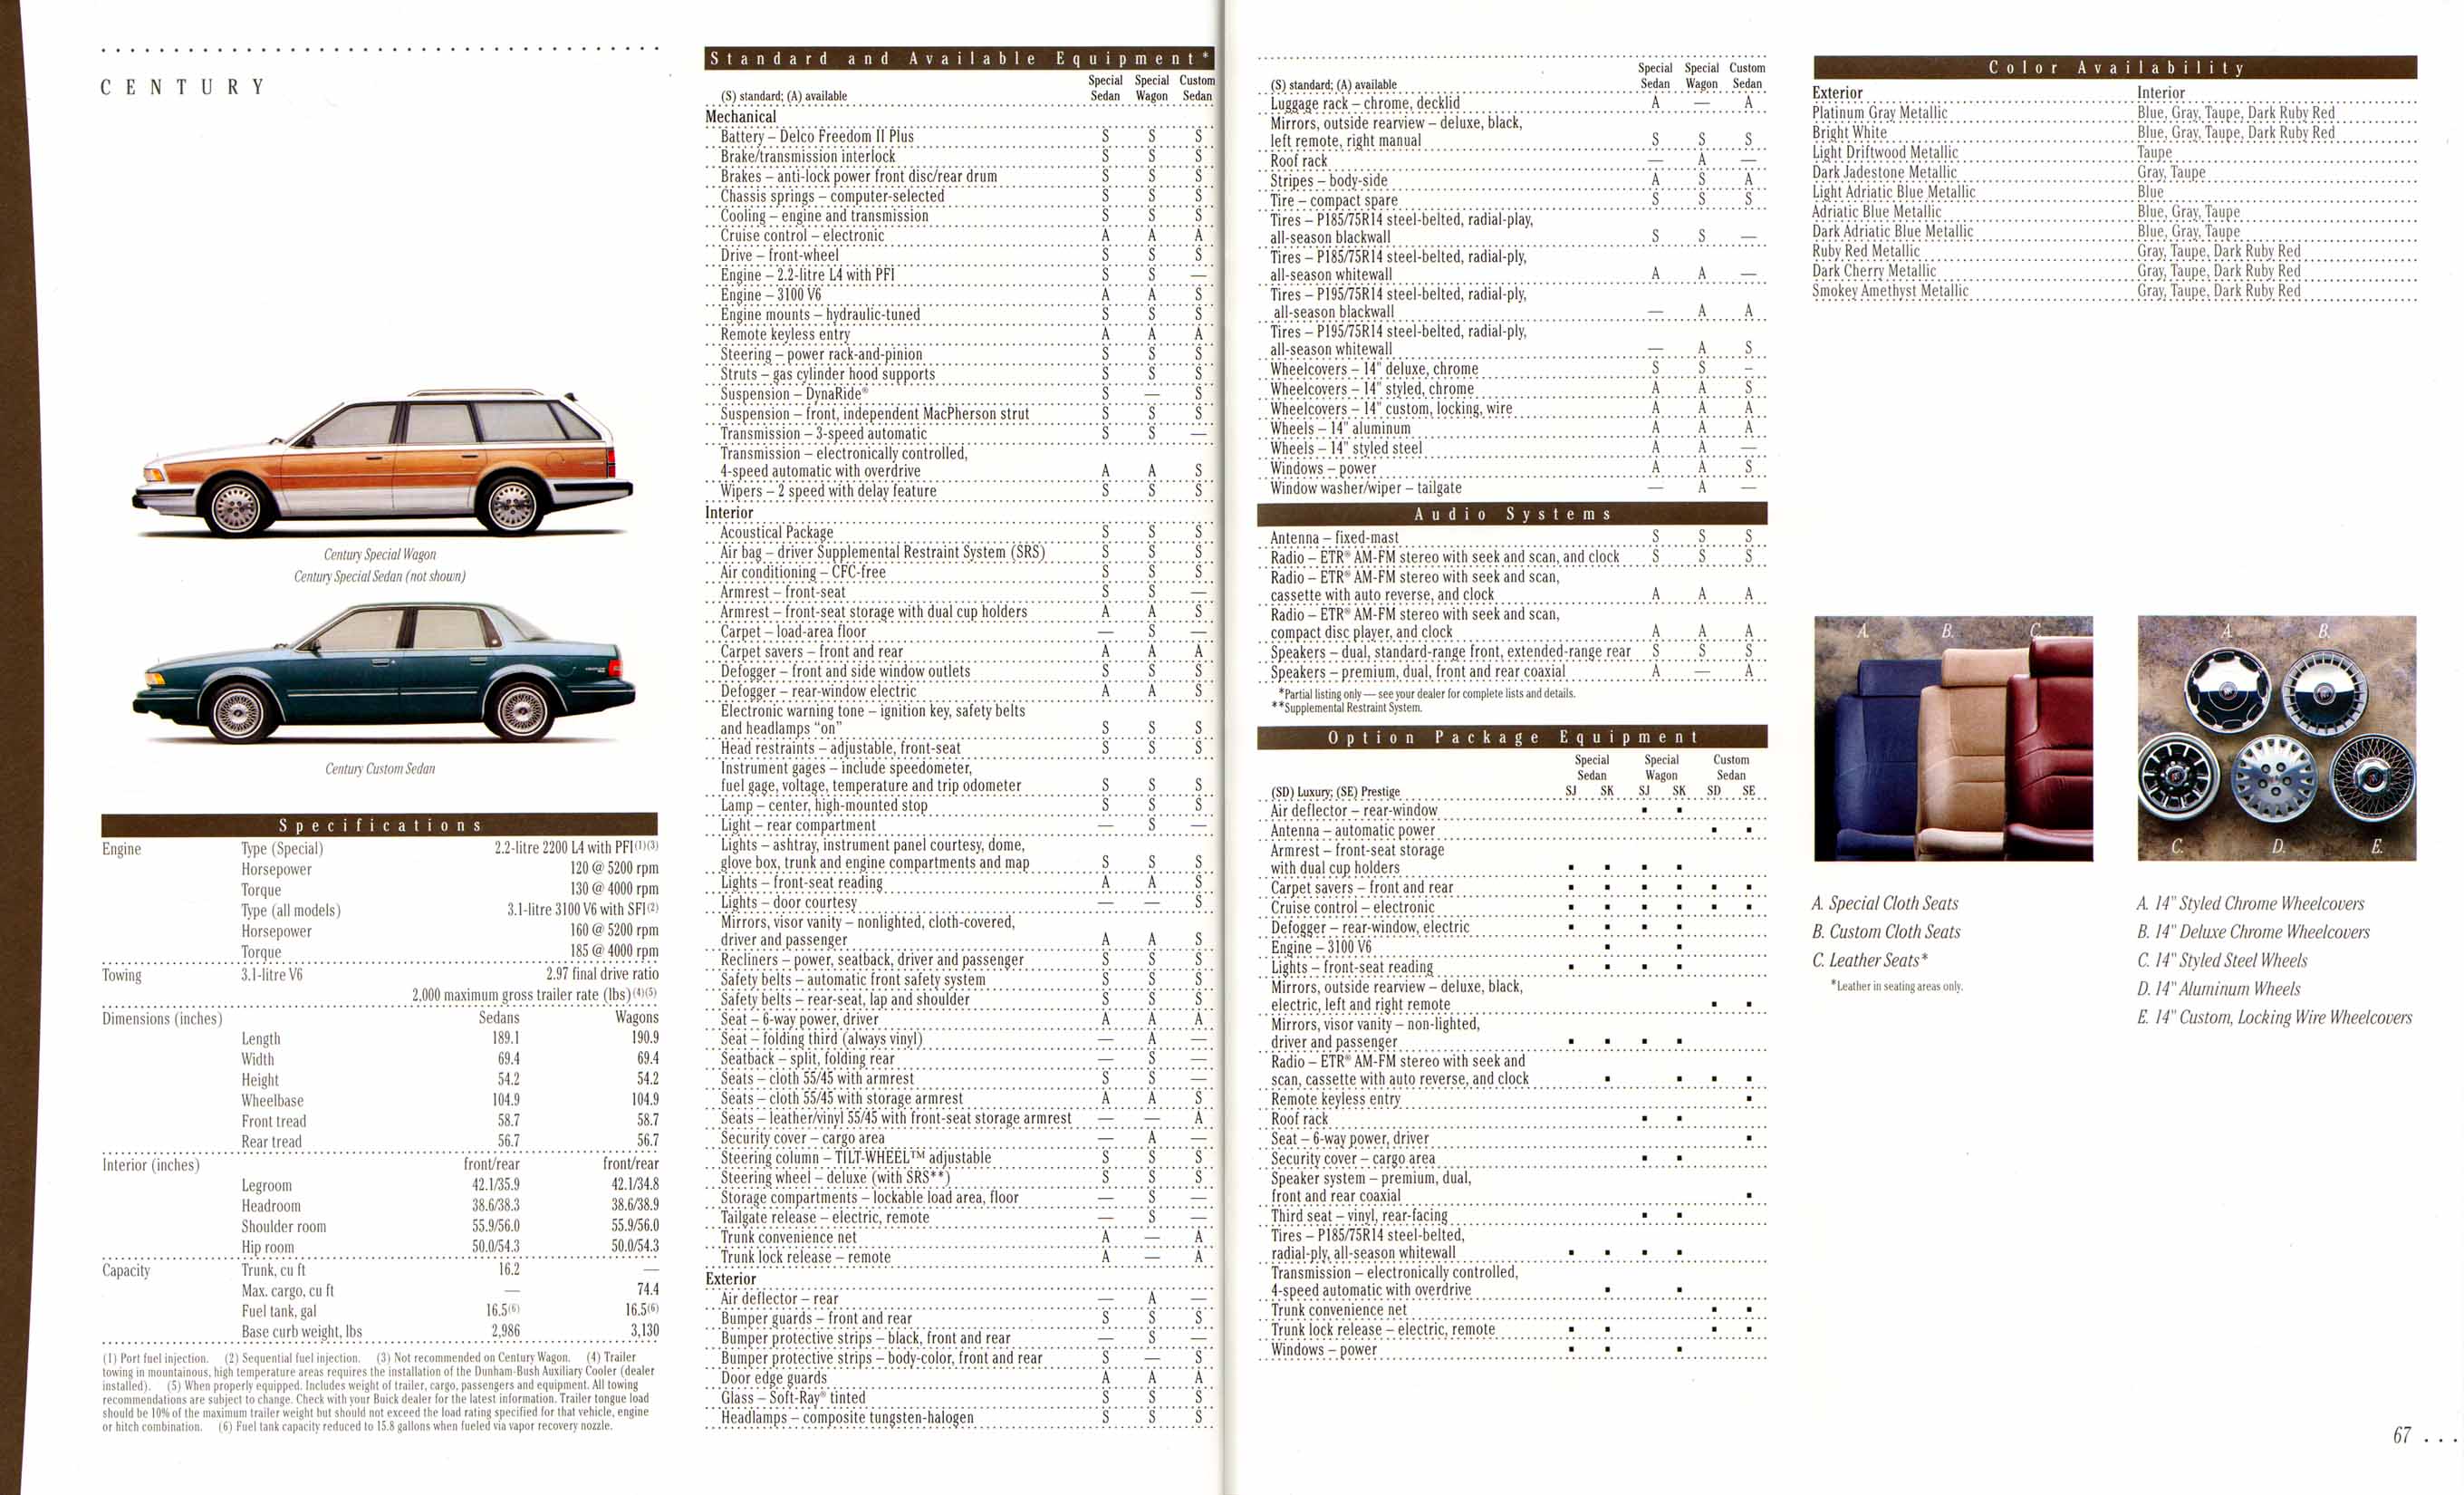 1995 Buick Full Line Prestige-66-67